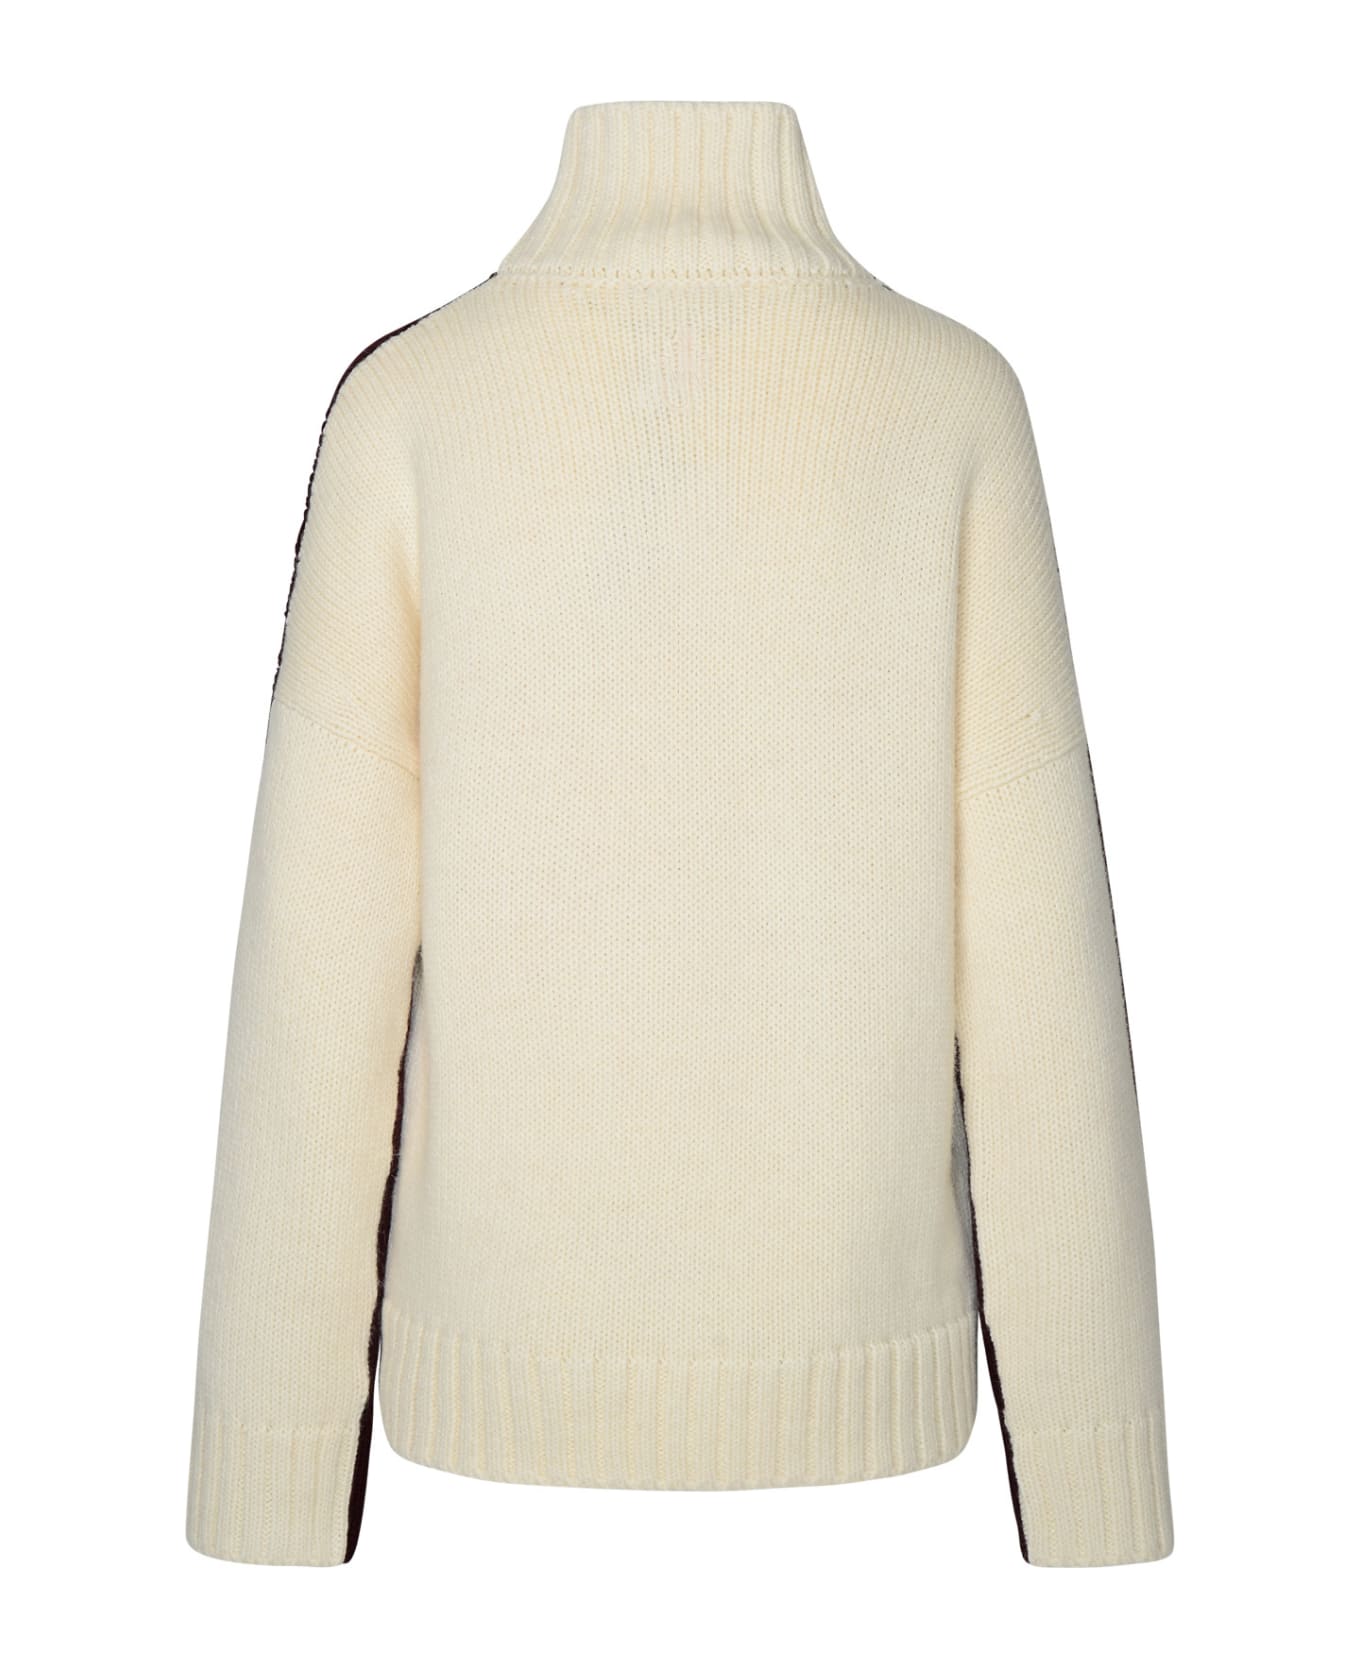 J.W. Anderson Two-tone Turtleneck Sweater In Alpaca Blend - Bordeaux